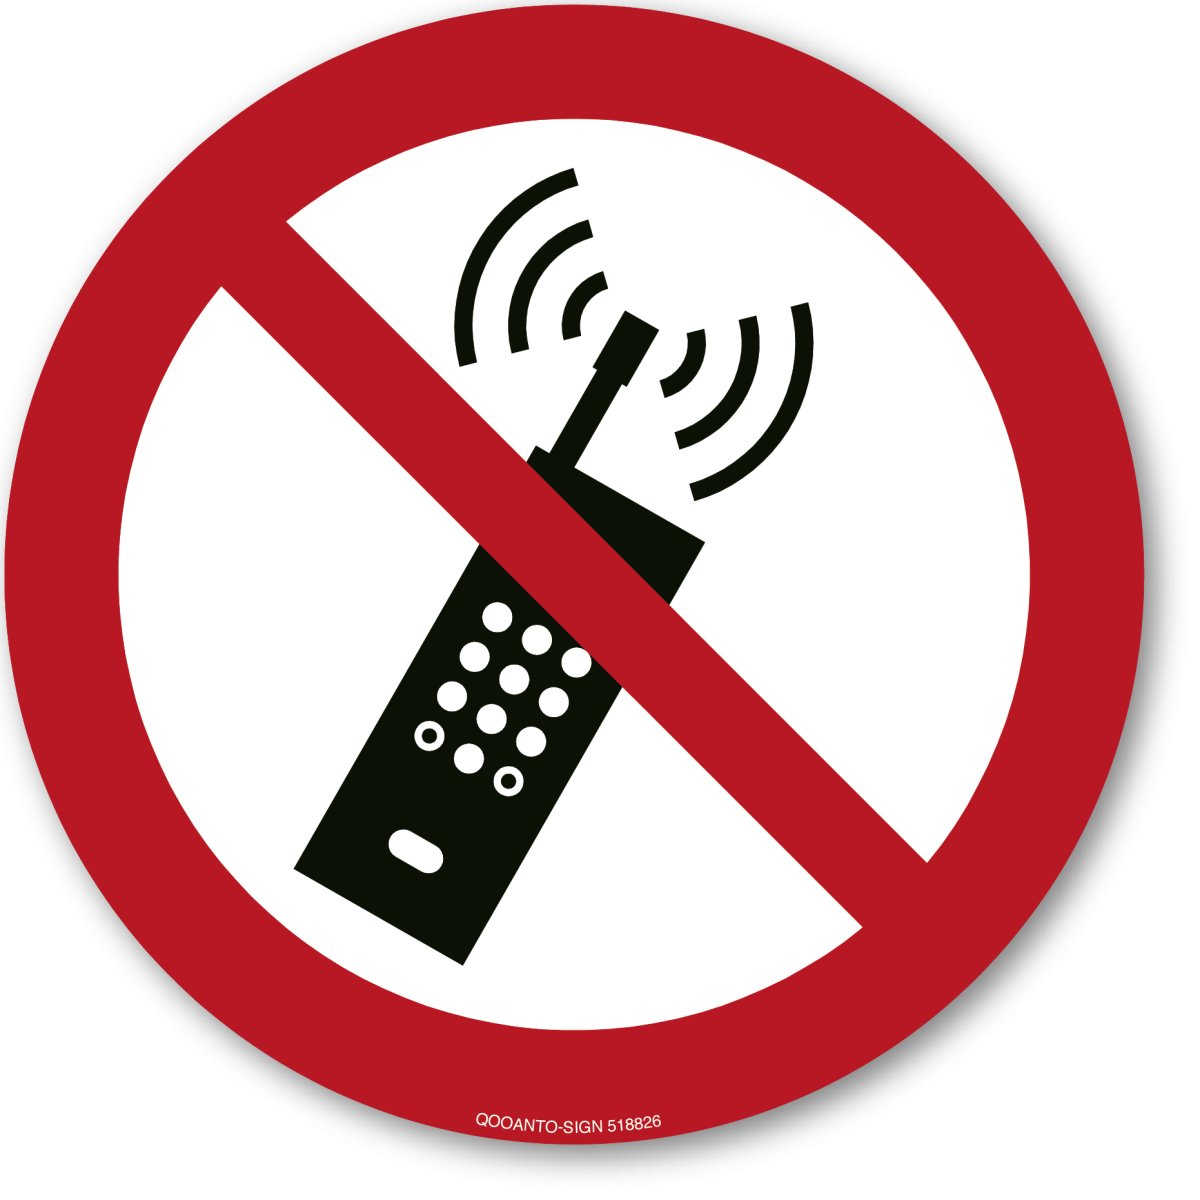 Eingeschaltete Mobiltelefone Verboten, EN ISO 7010, P013 Verbotsschild oder Aufkleber aus Alu-Verbund oder Selbstklebefolie mit UV-Schutz - QOOANTO-SIGN